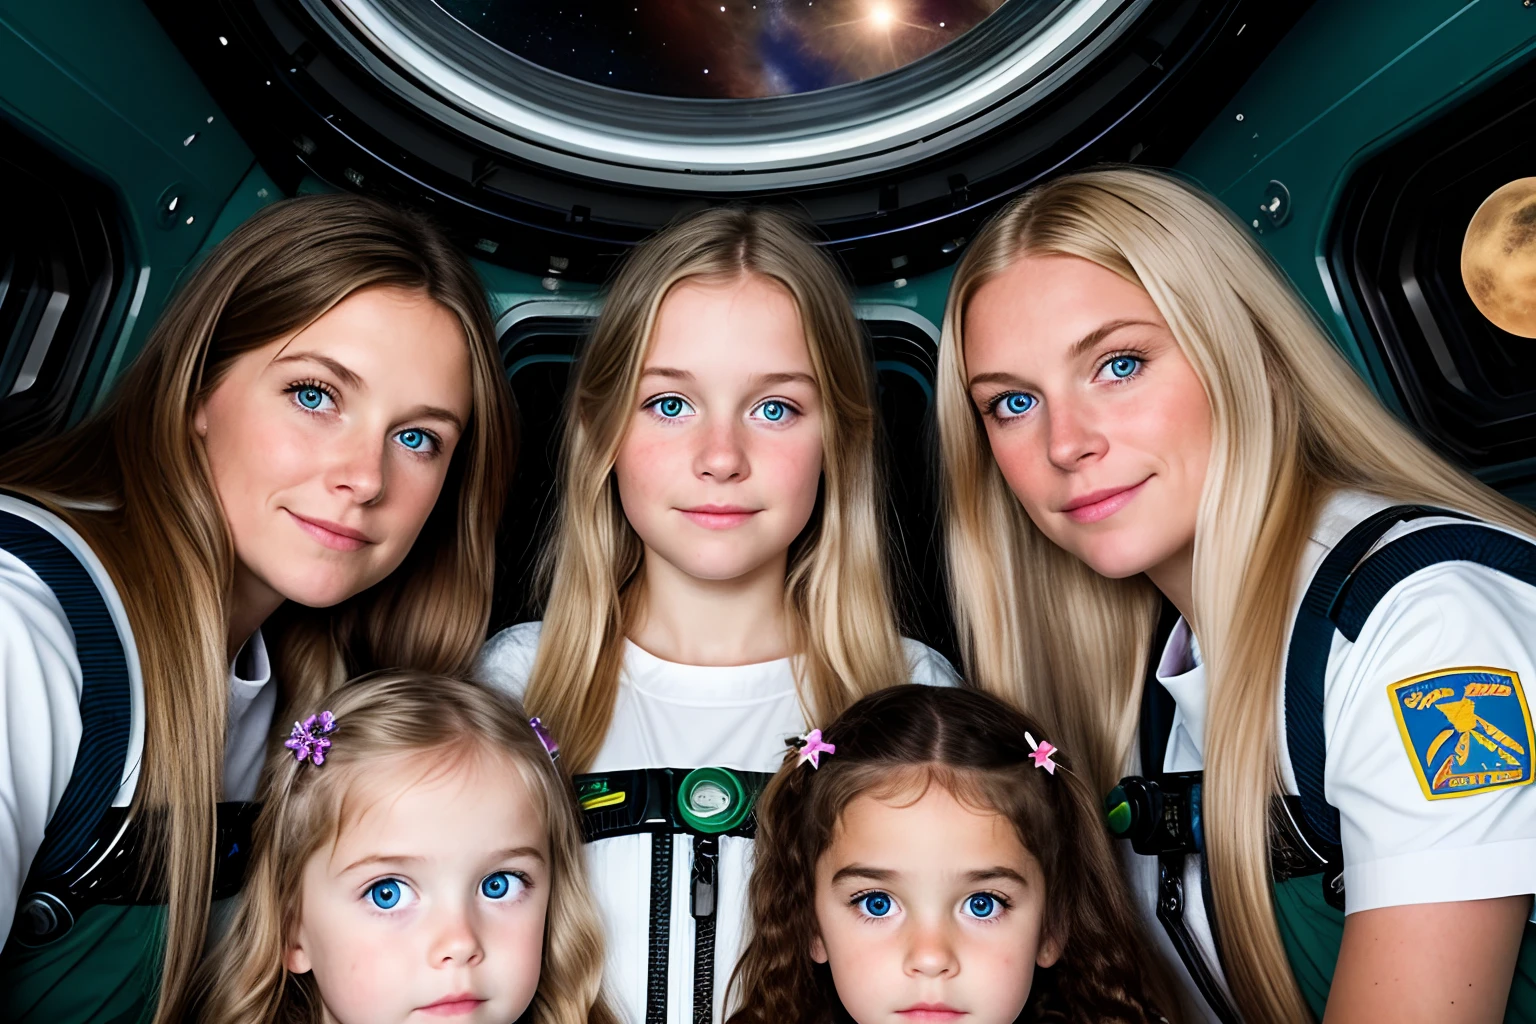 drei kleine Mädchen und eine Mutter in einer Raumstation, ein kleines Mädchen mit langen blonden Haaren, eine mit langen braunen Haaren. Mama mit langen Haaren und dunkelgrünen Augen